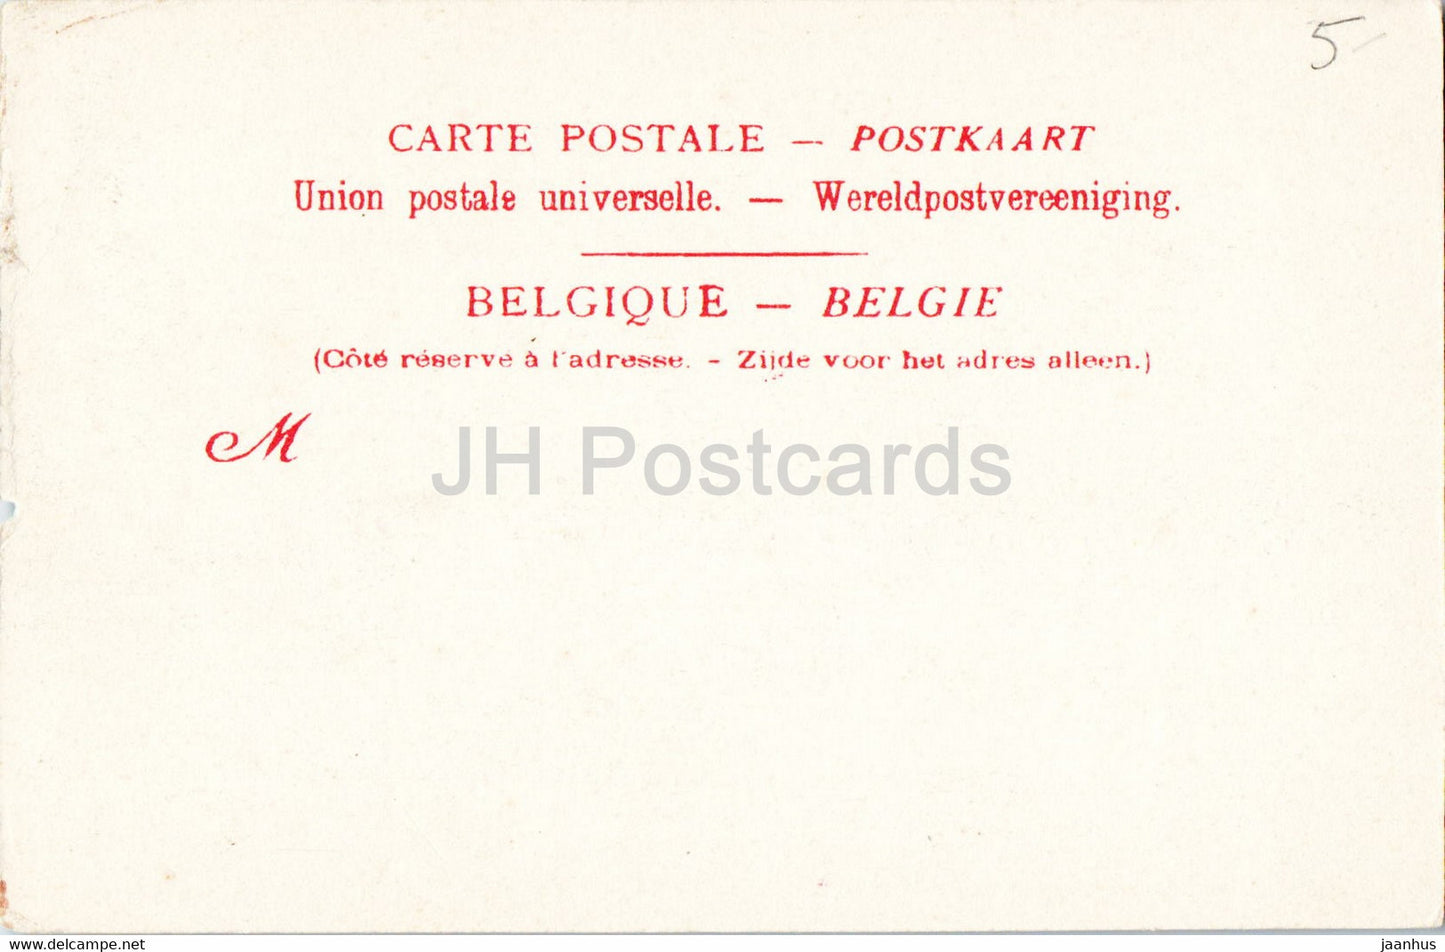 Gand - Gent - Le Casino - 21 - alte Postkarte - Belgien - unbenutzt